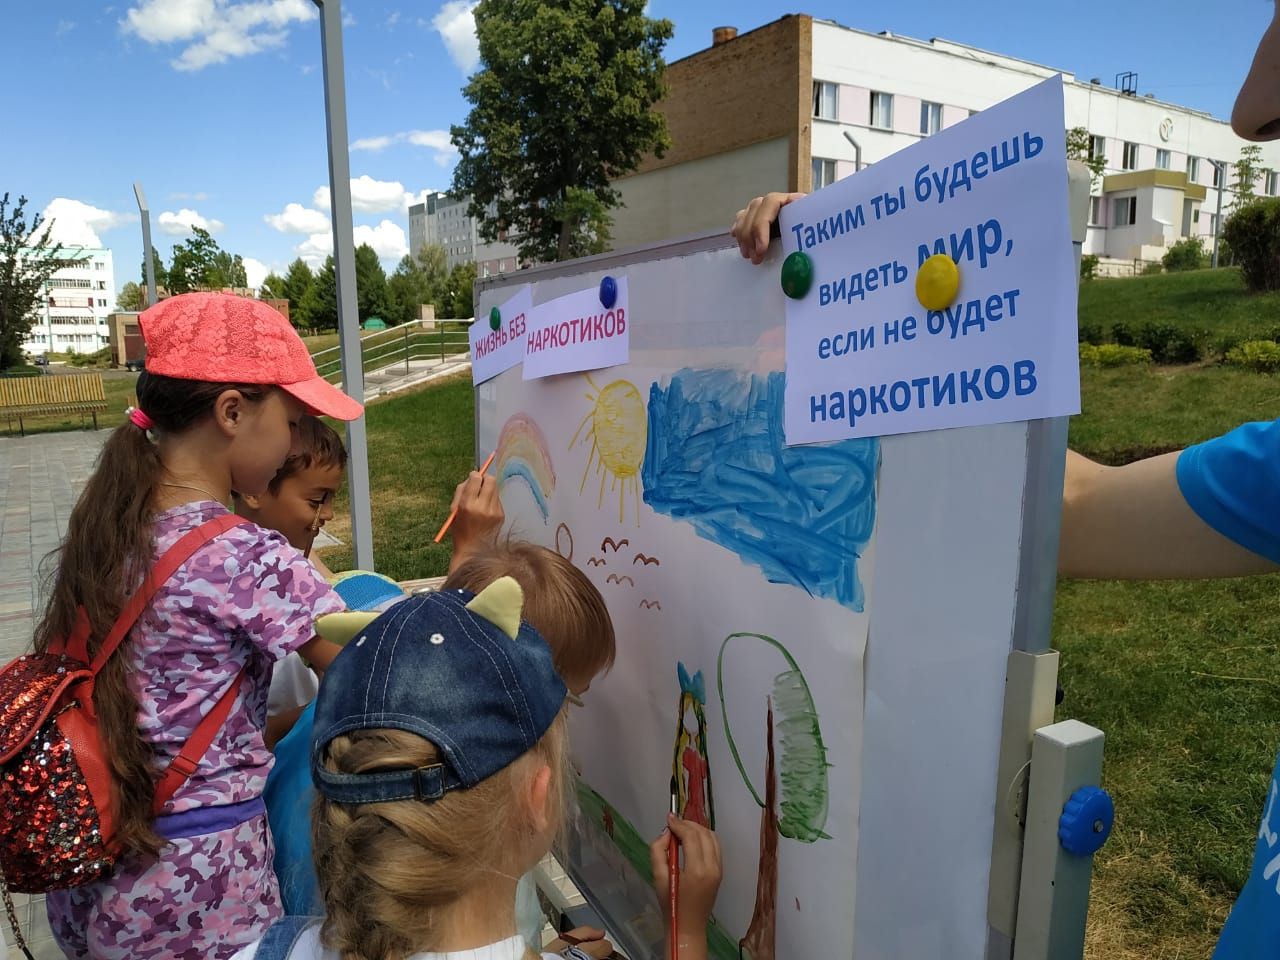 Камполянские активисты Детской районной Думы рисовали с детьми рисунки на тему: "Таким ты будешь видеть мир, если не будет наркотиков"